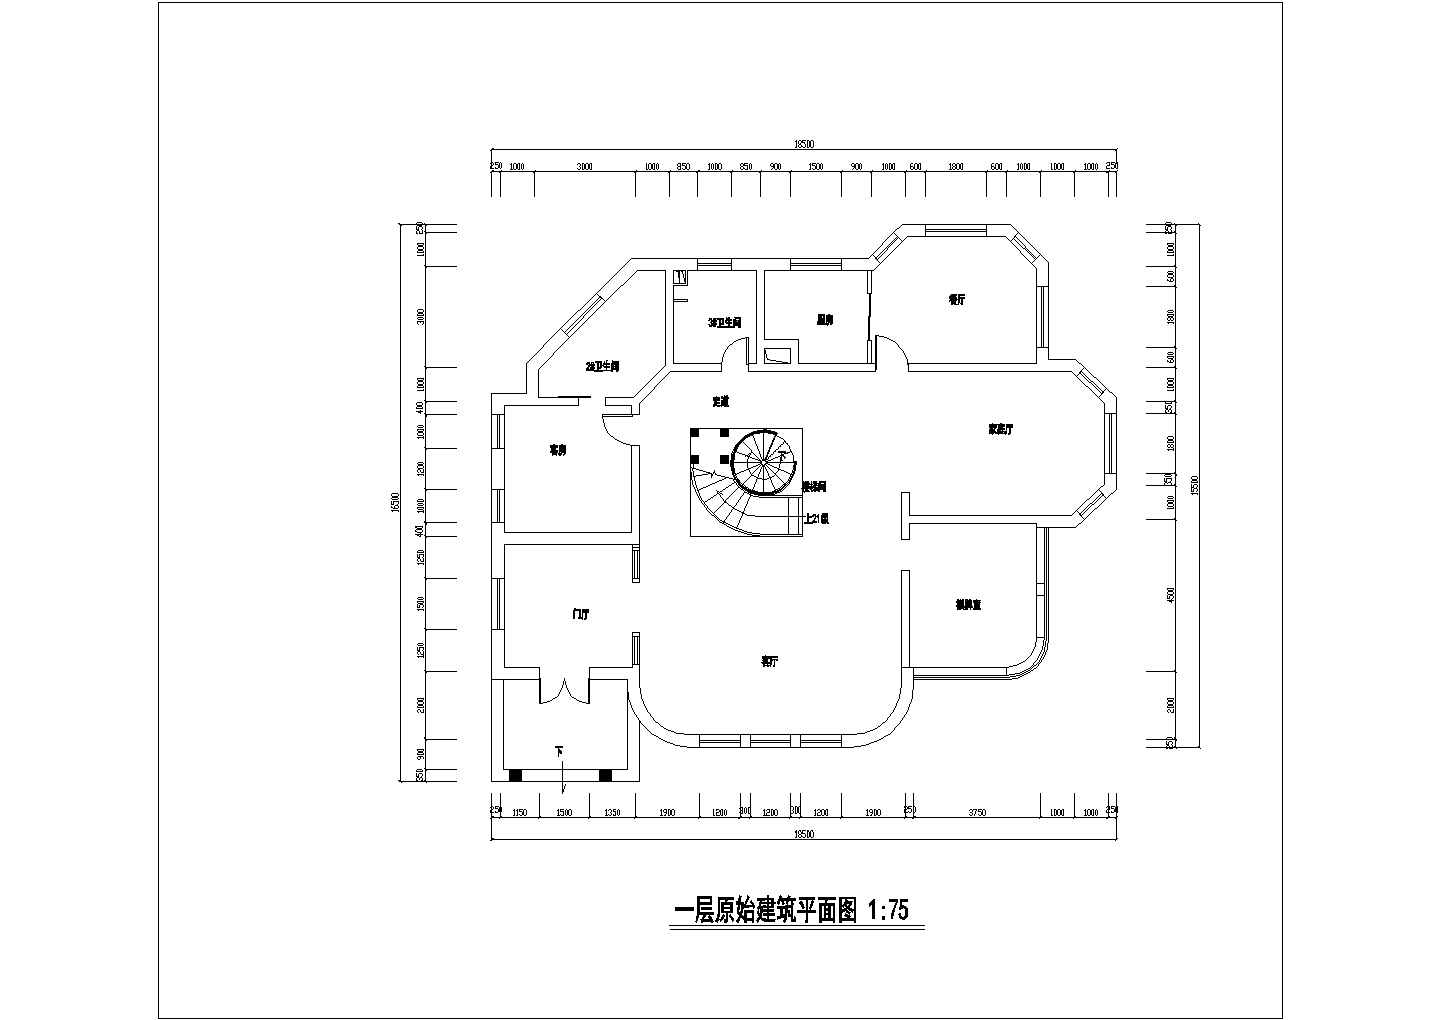 中式二层别墅装修设计施工图节点详细图纸